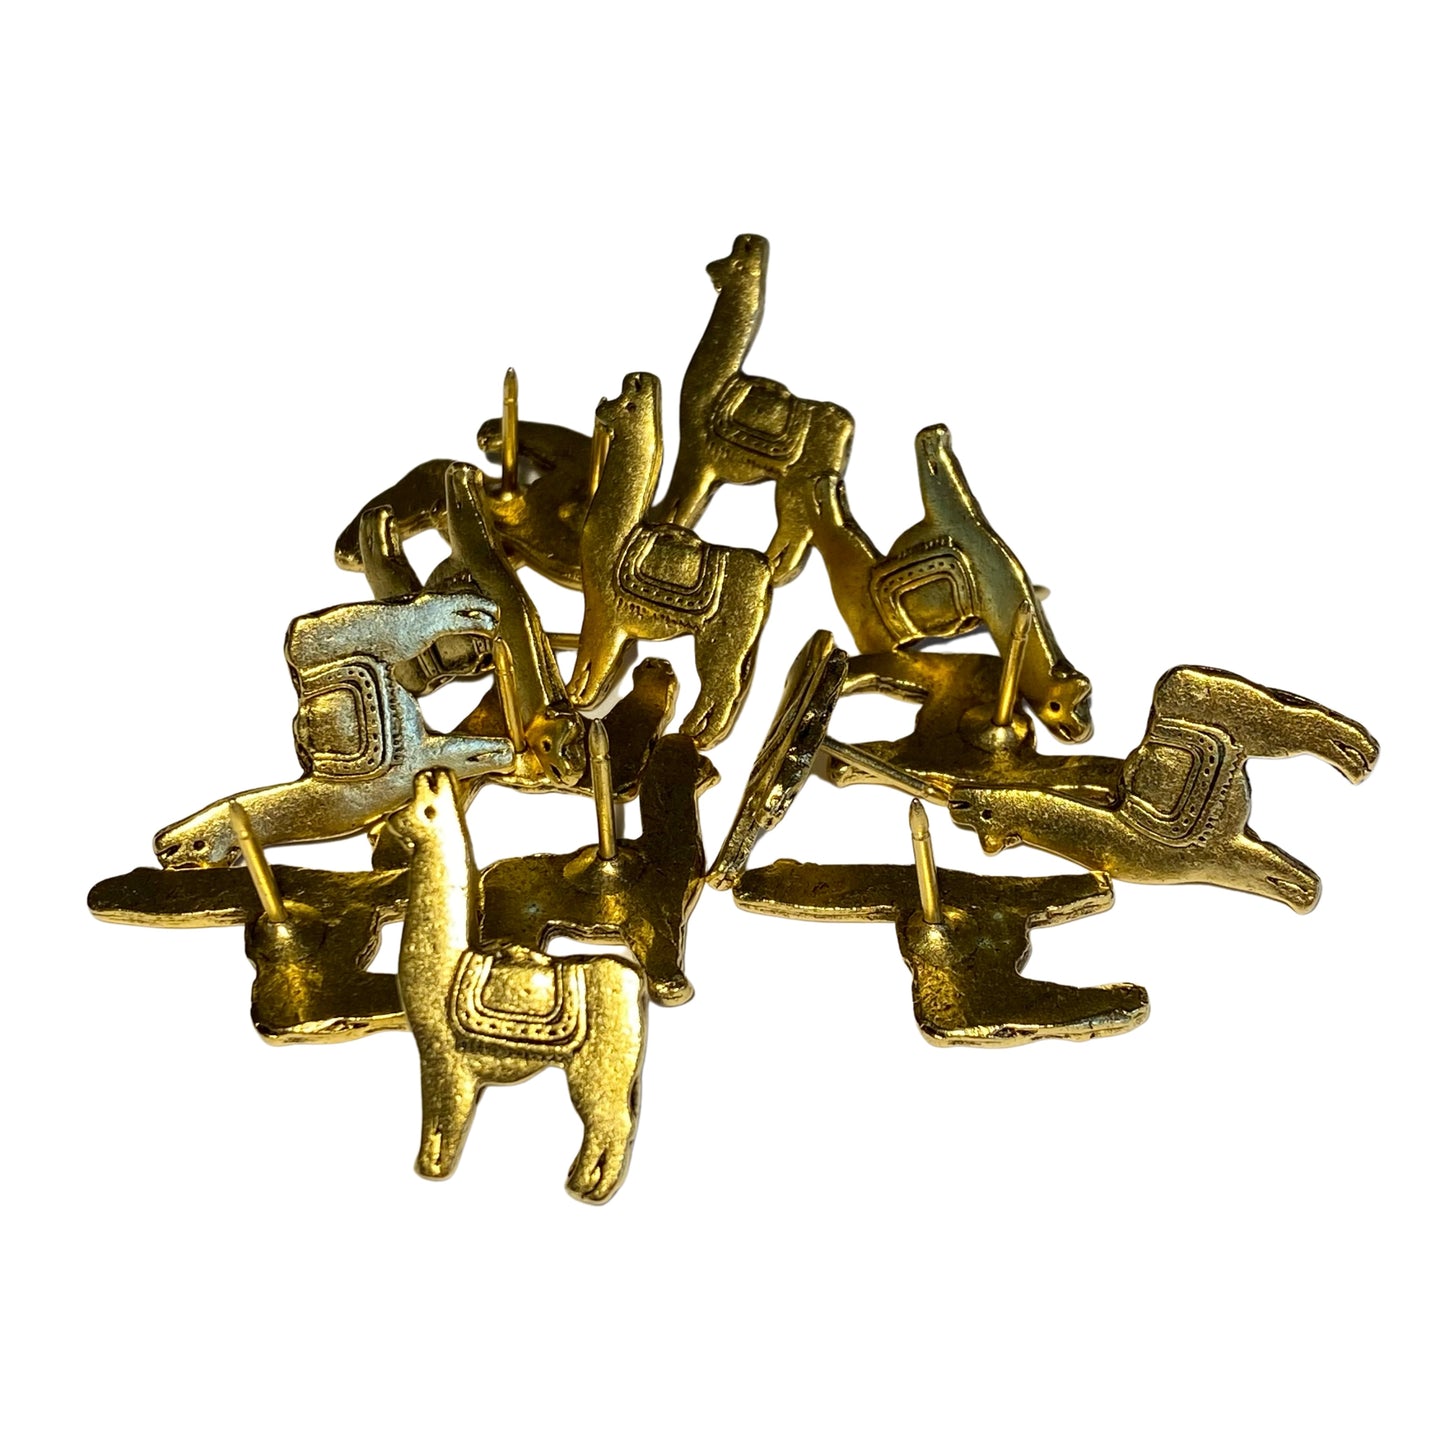 Llama Push Pins, Decorative Push Pins, Unique Silver Push Pins, 15 Piece Metal Push Pin Set